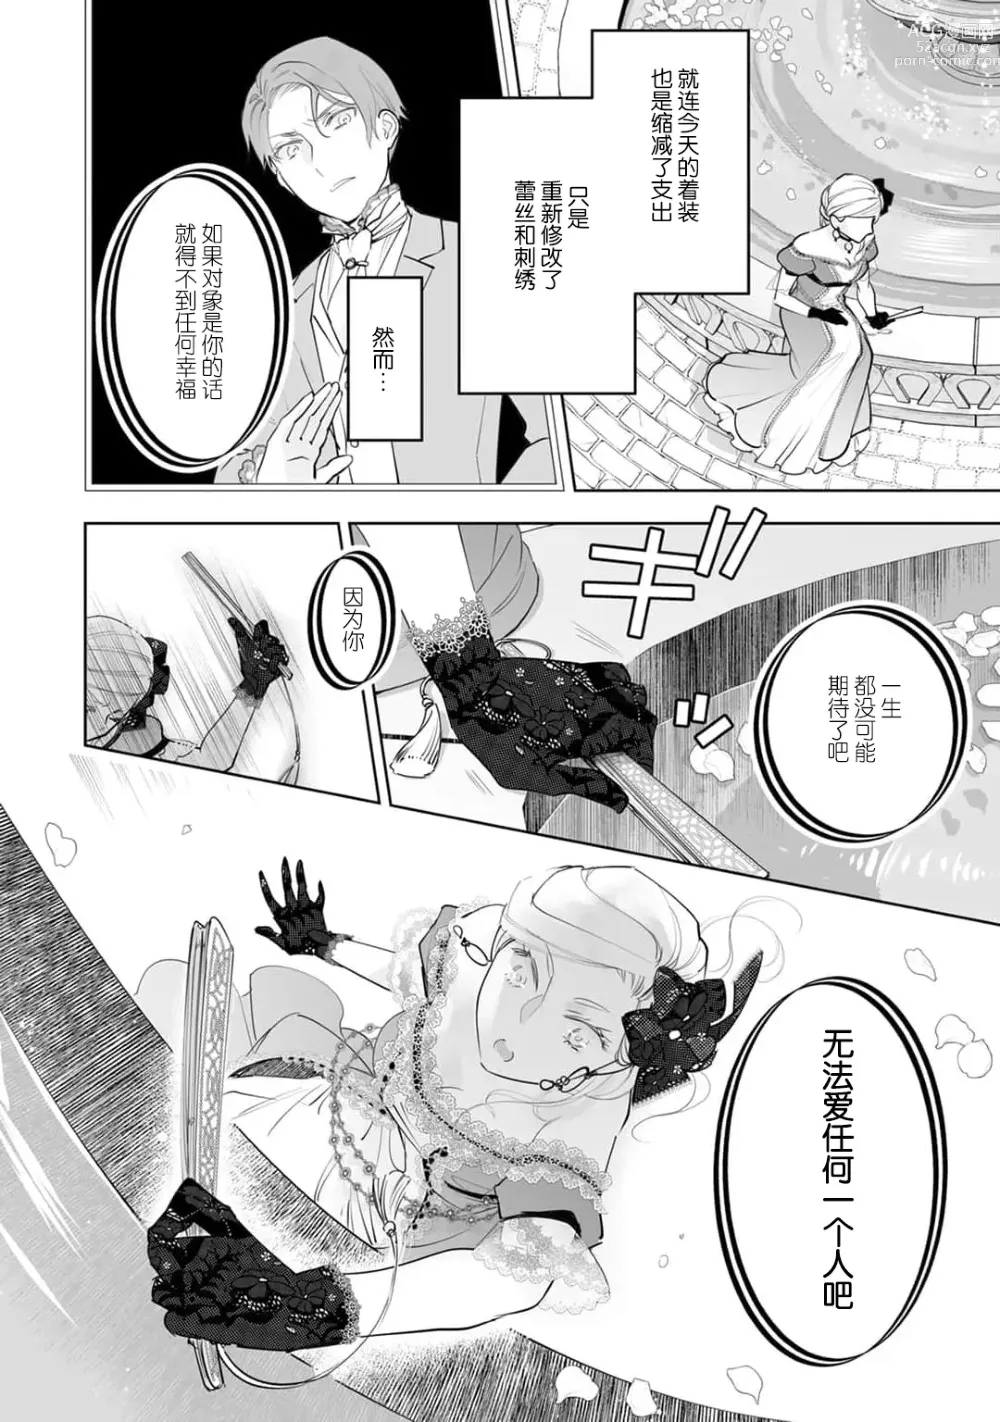 Page 6 of manga 被解除婚约的恶役千金，被帅哥资产家求婚了。 1-4